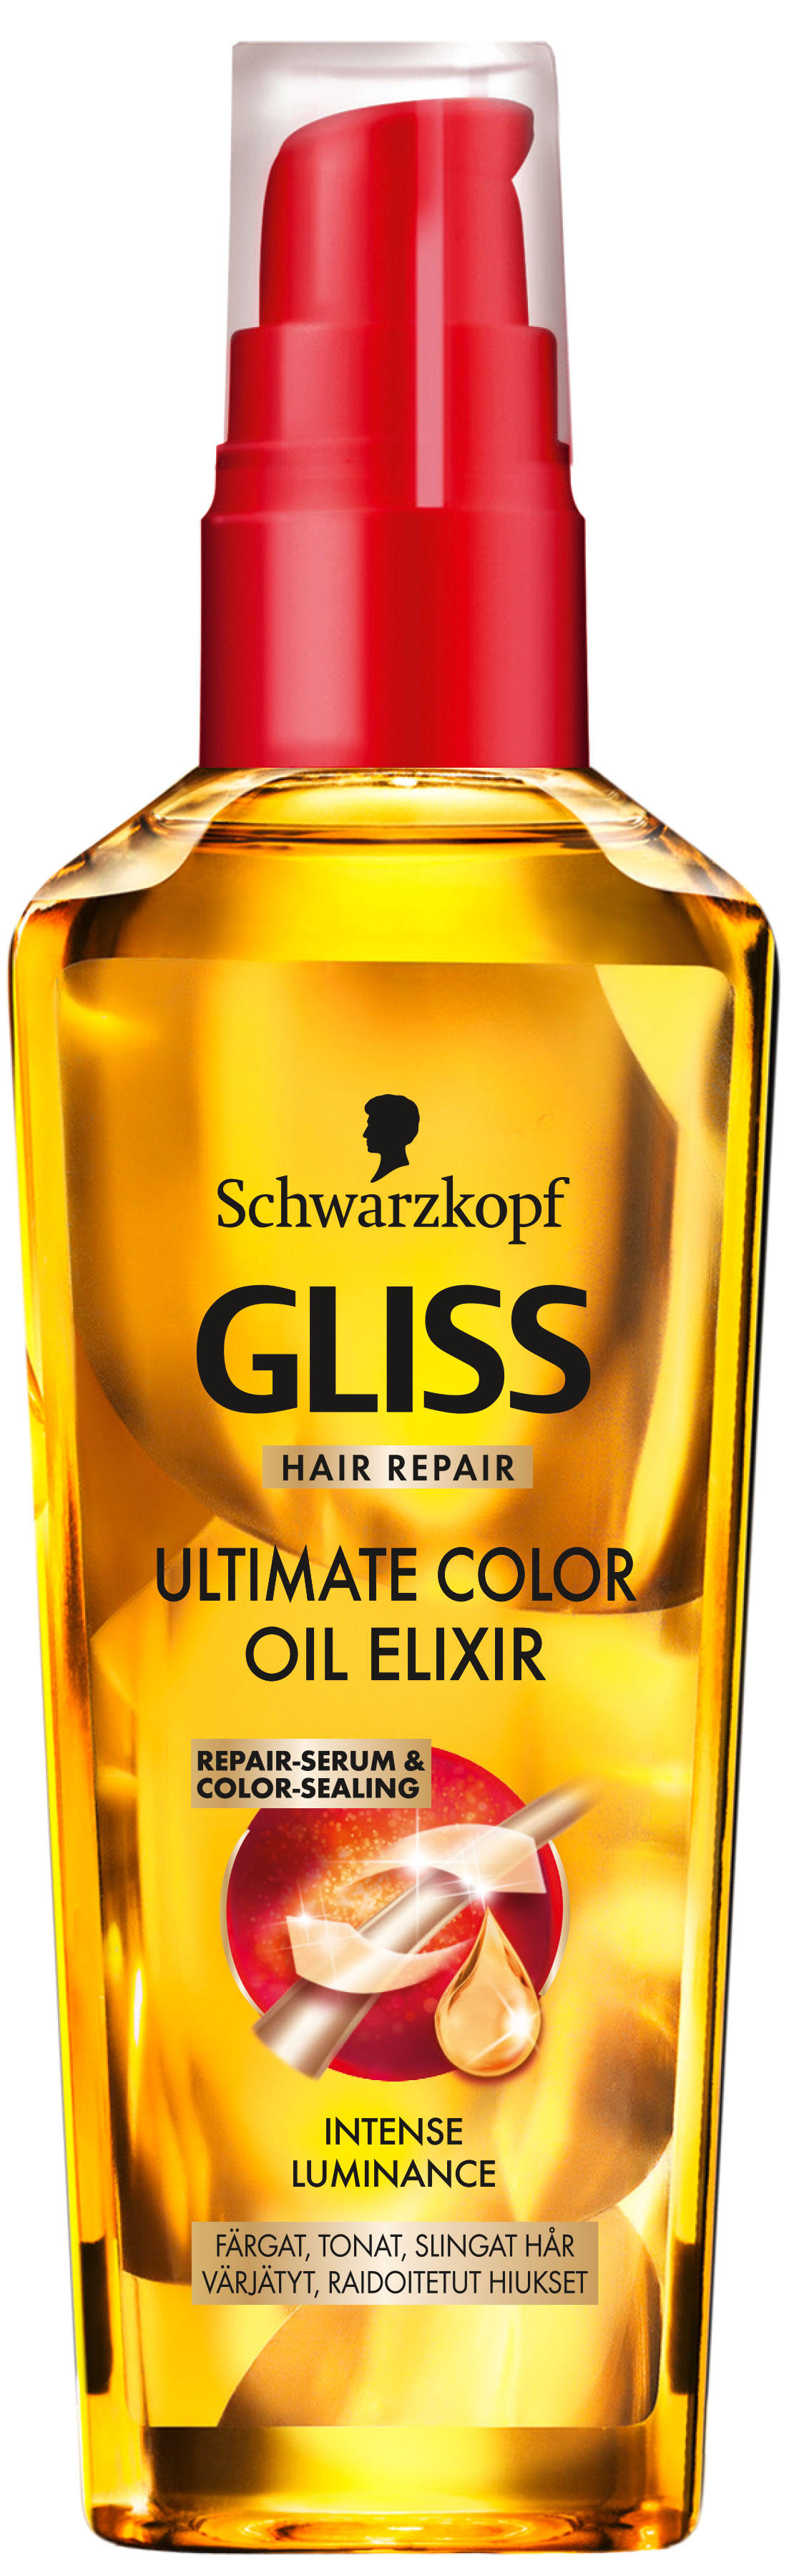 Schwarzkopf Gliss Hair Repair Ultimate Color Oil Elixir